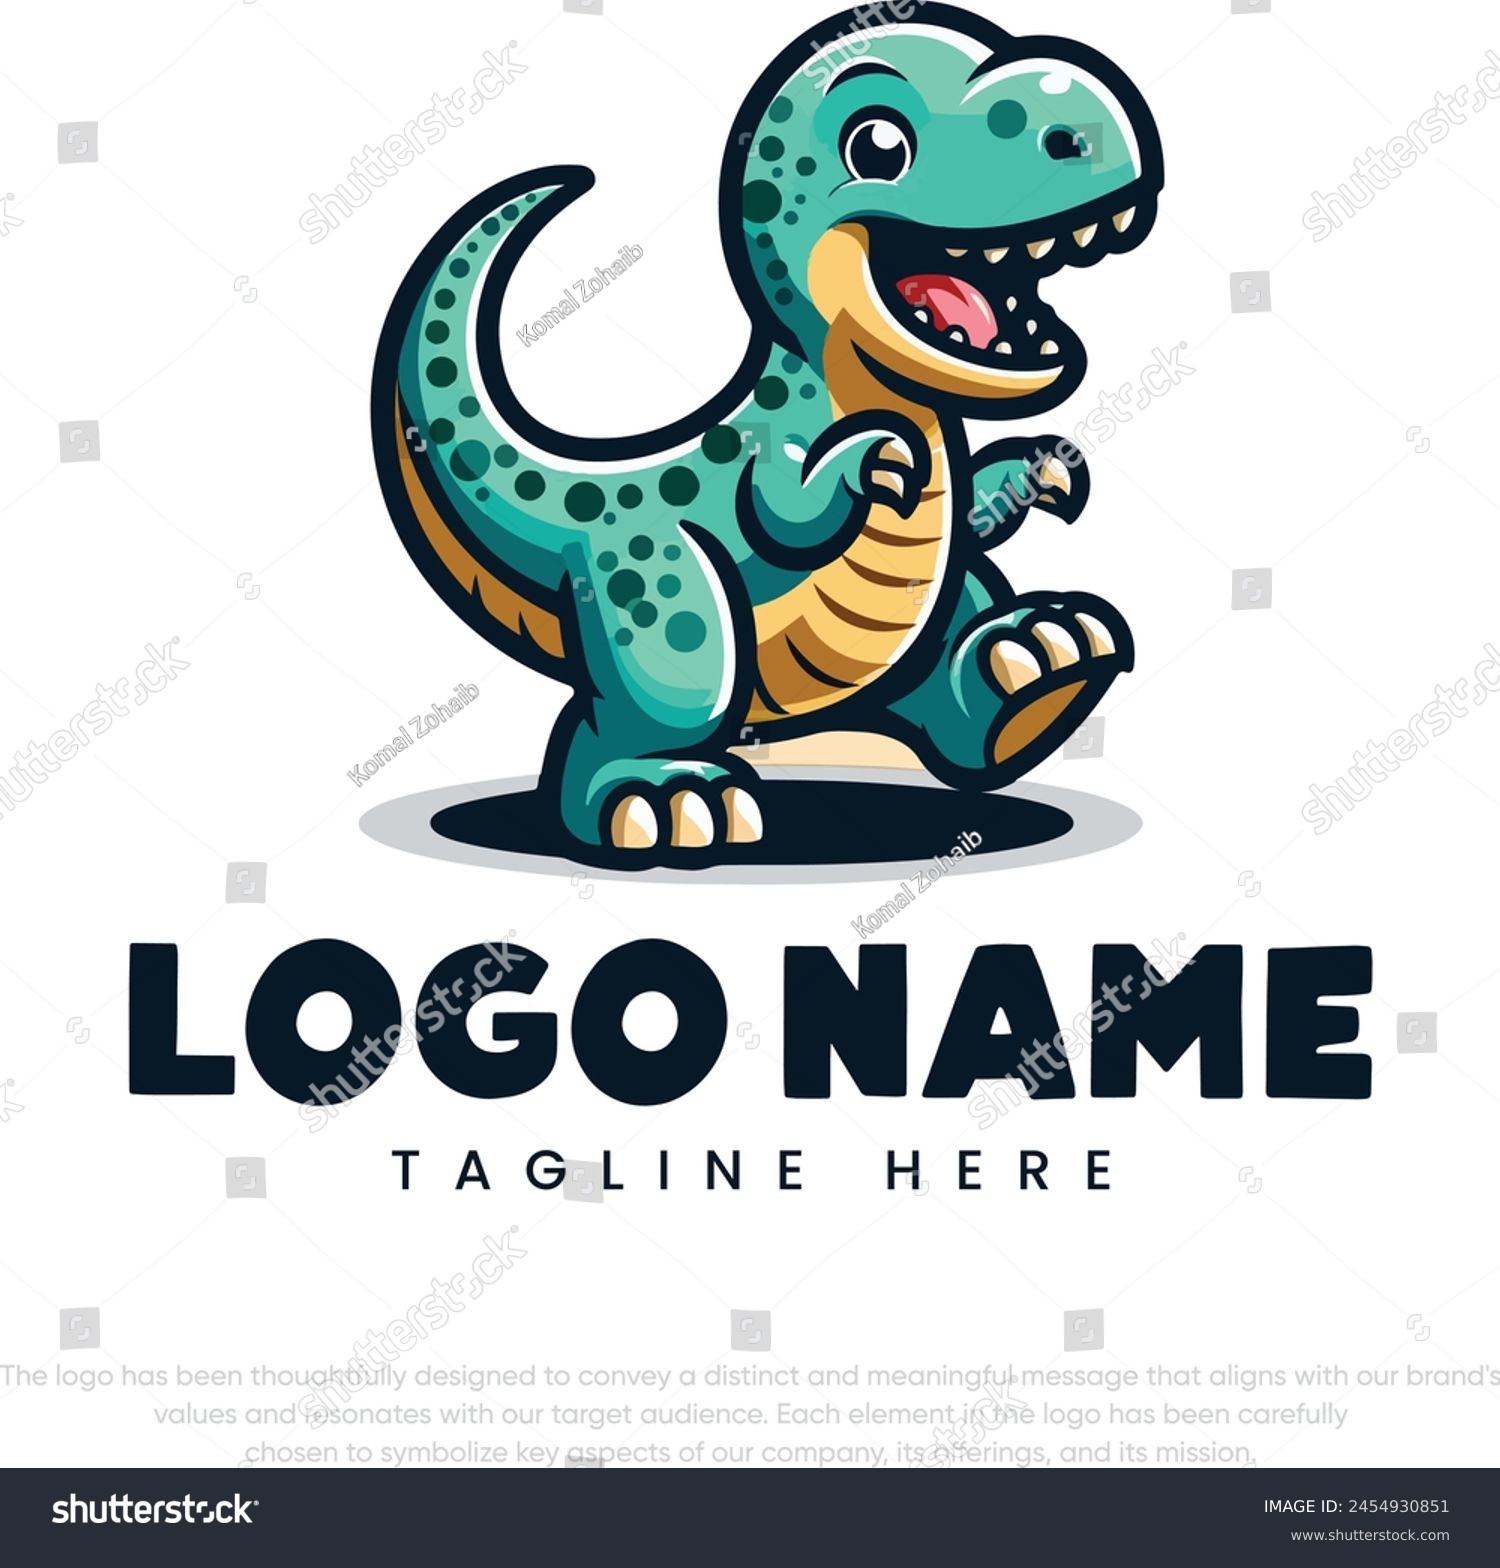 SVG of Cartoon illustration of cute baby dinosaur logo svg